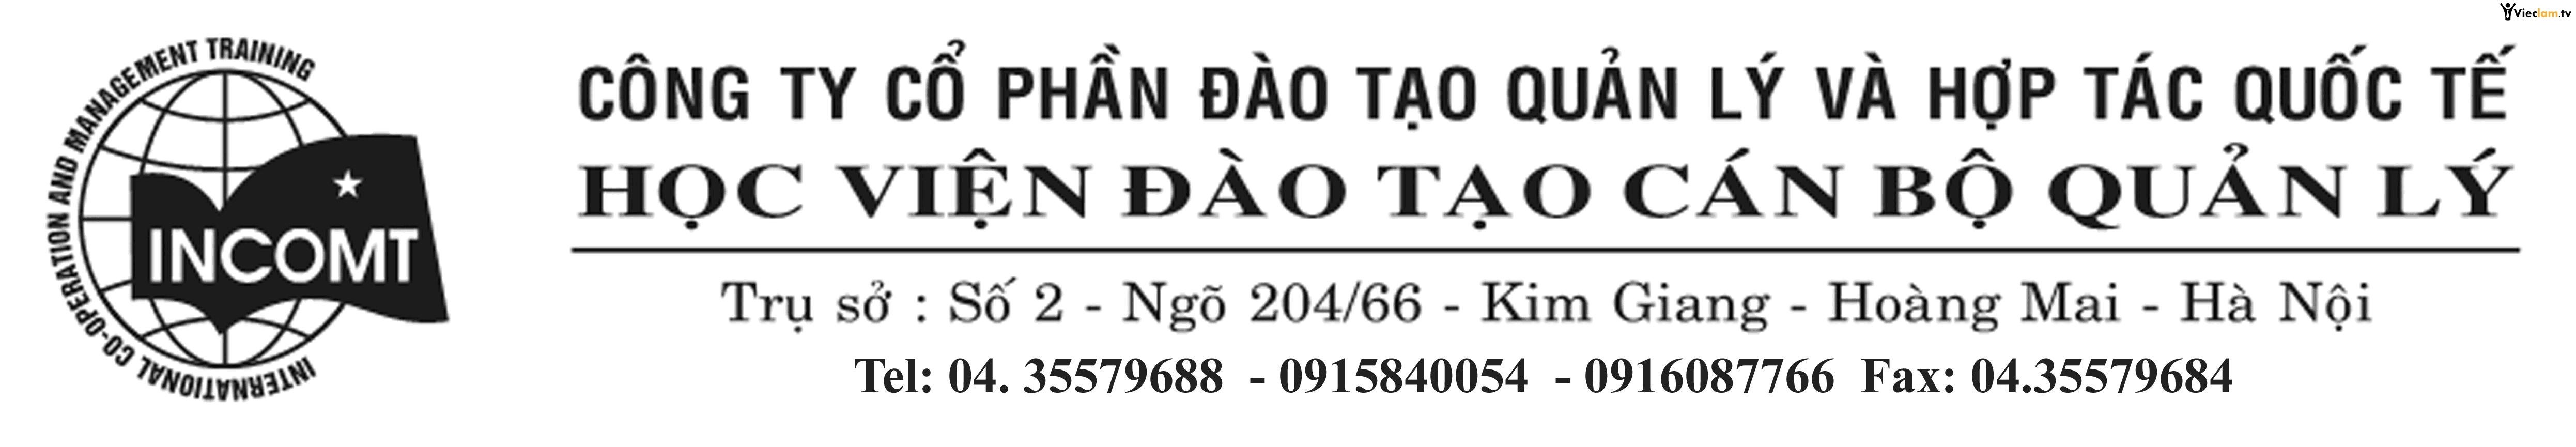 Logo Dao Tao Quan Ly Va Hop Tac Quoc Te Joint Stock Company